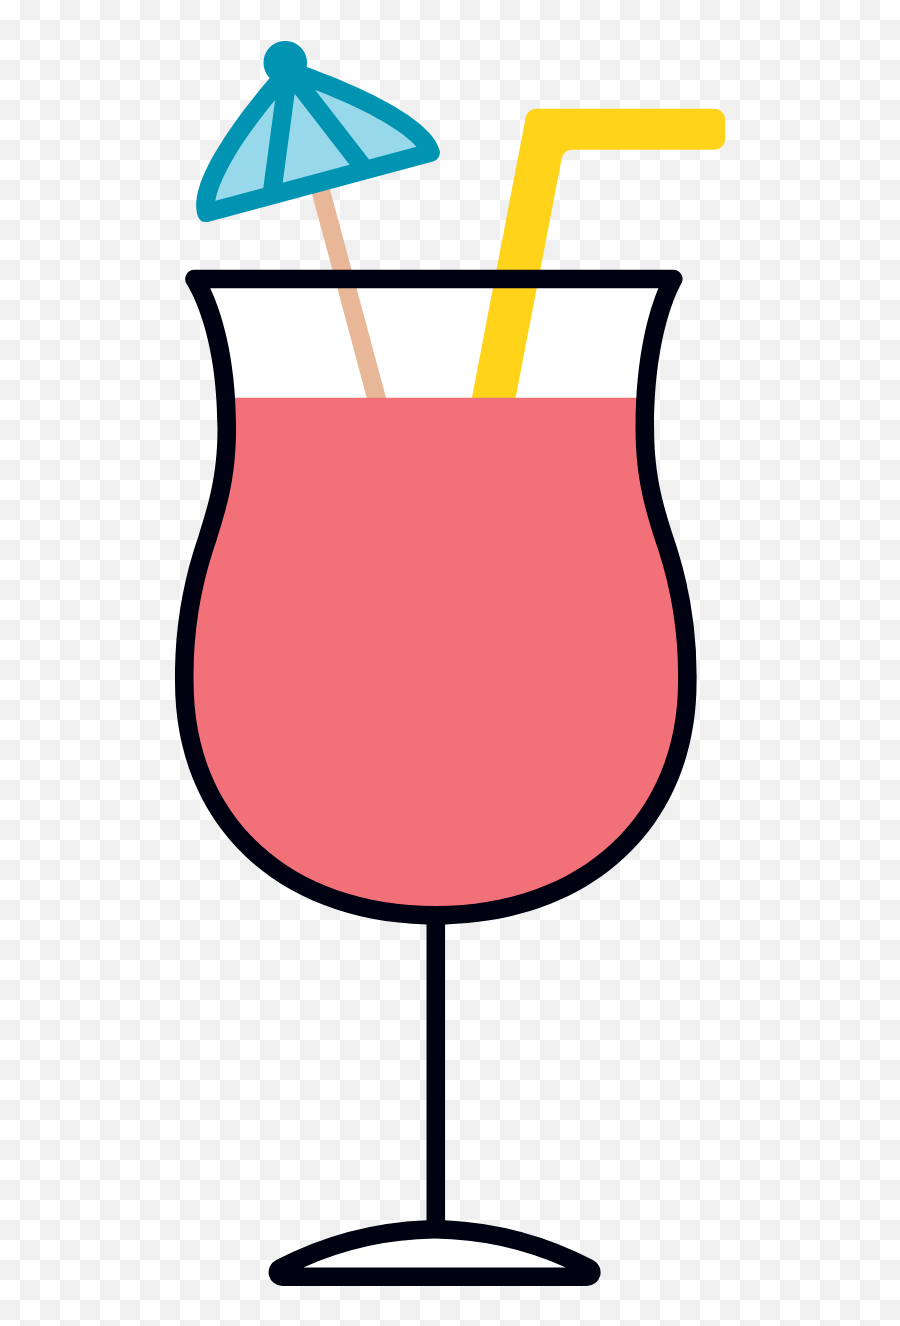 Miami Vice Graphic - Clip Art Free Graphics U0026 Vectors Wine Glass Emoji,Lobster Emoji Android